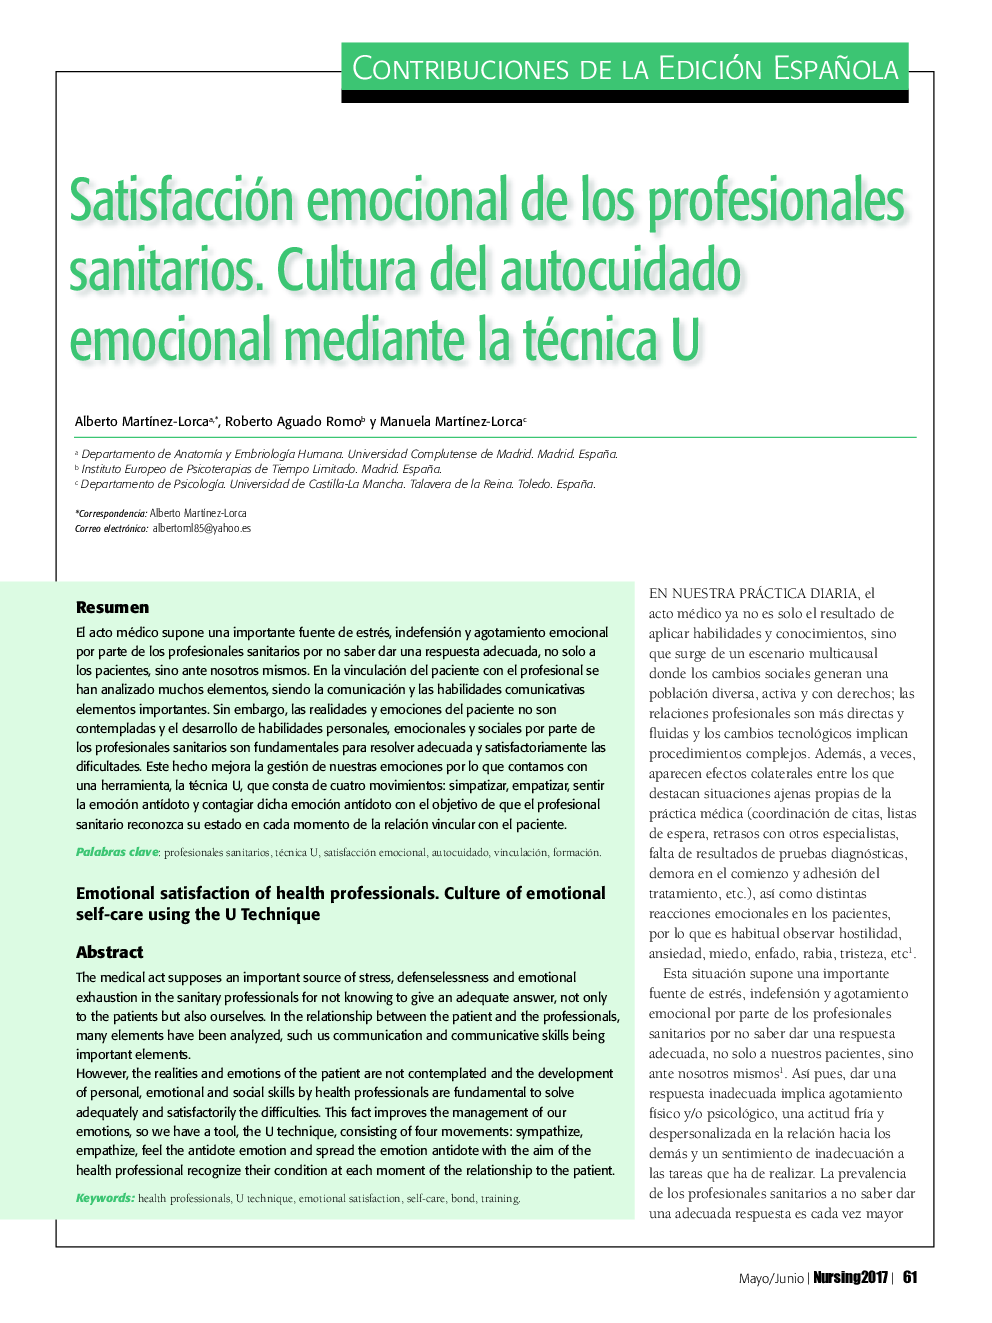 Satisfacción emocional de los profesionales sanitarios. Cultura del autocuidado emocional mediante la técnica U